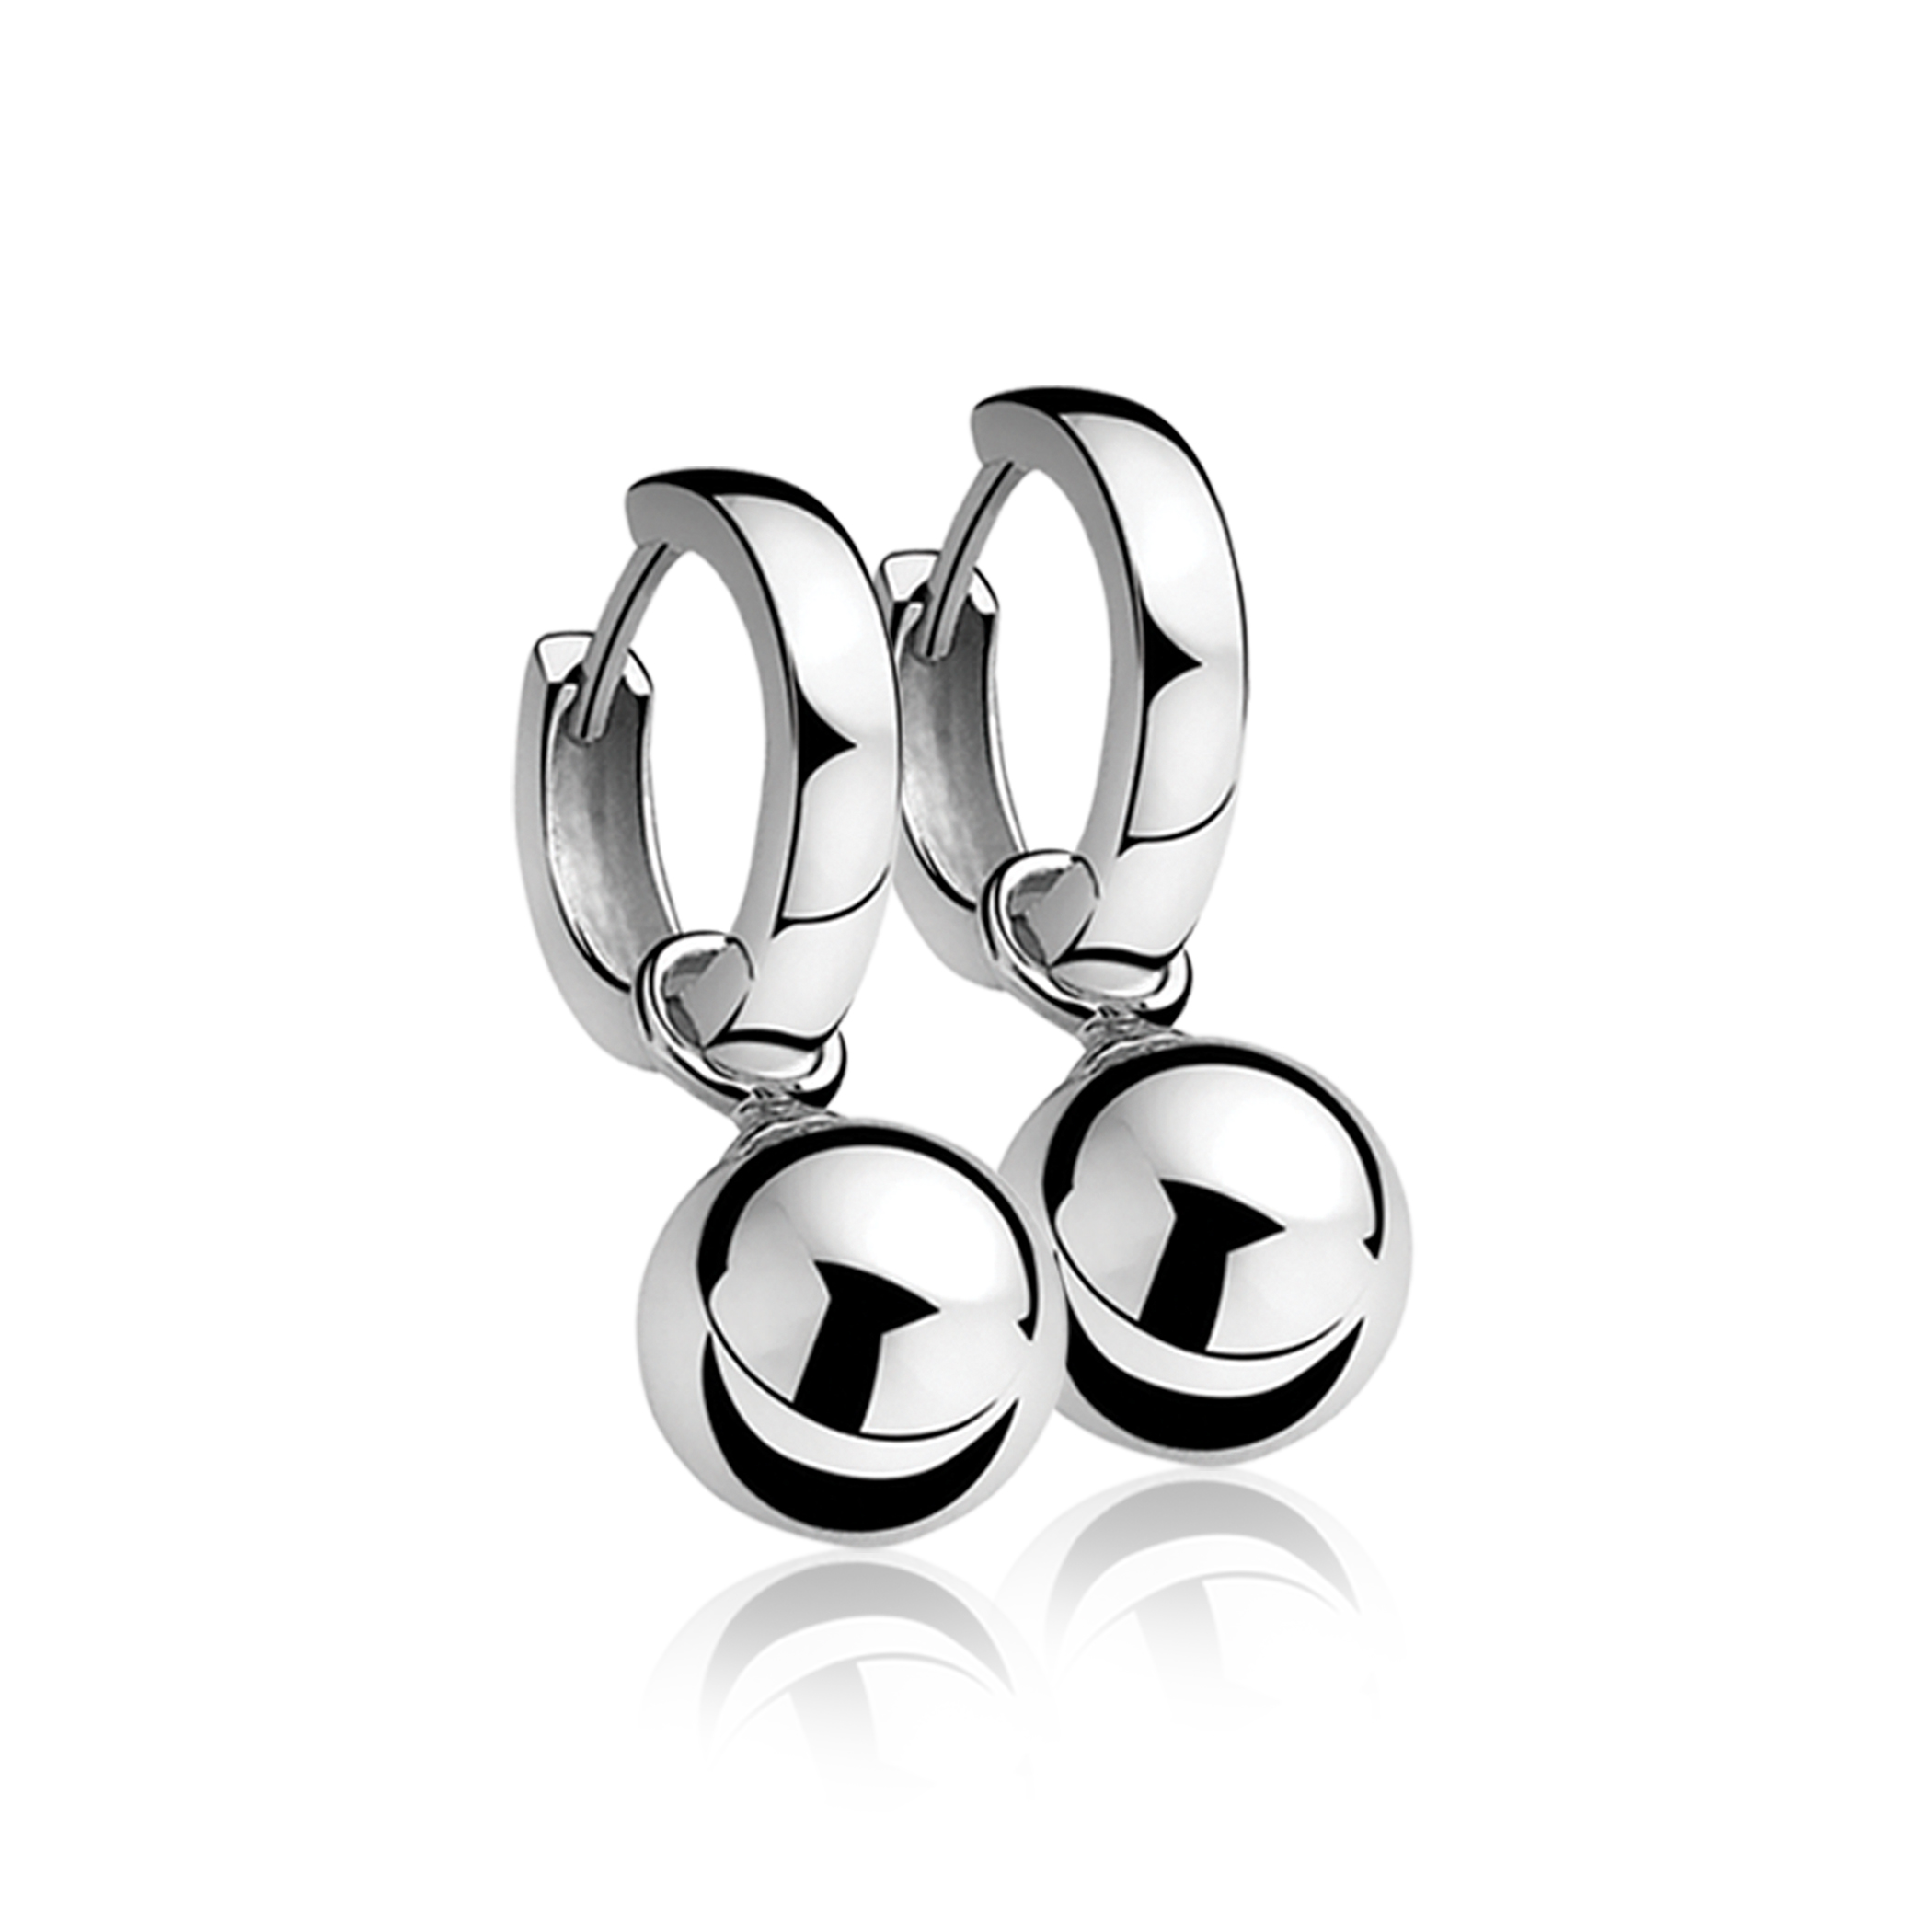 10mm ZINZI Sterling Silver Earrings Pendants Bead ZICH716 (excl. hoop earrings)